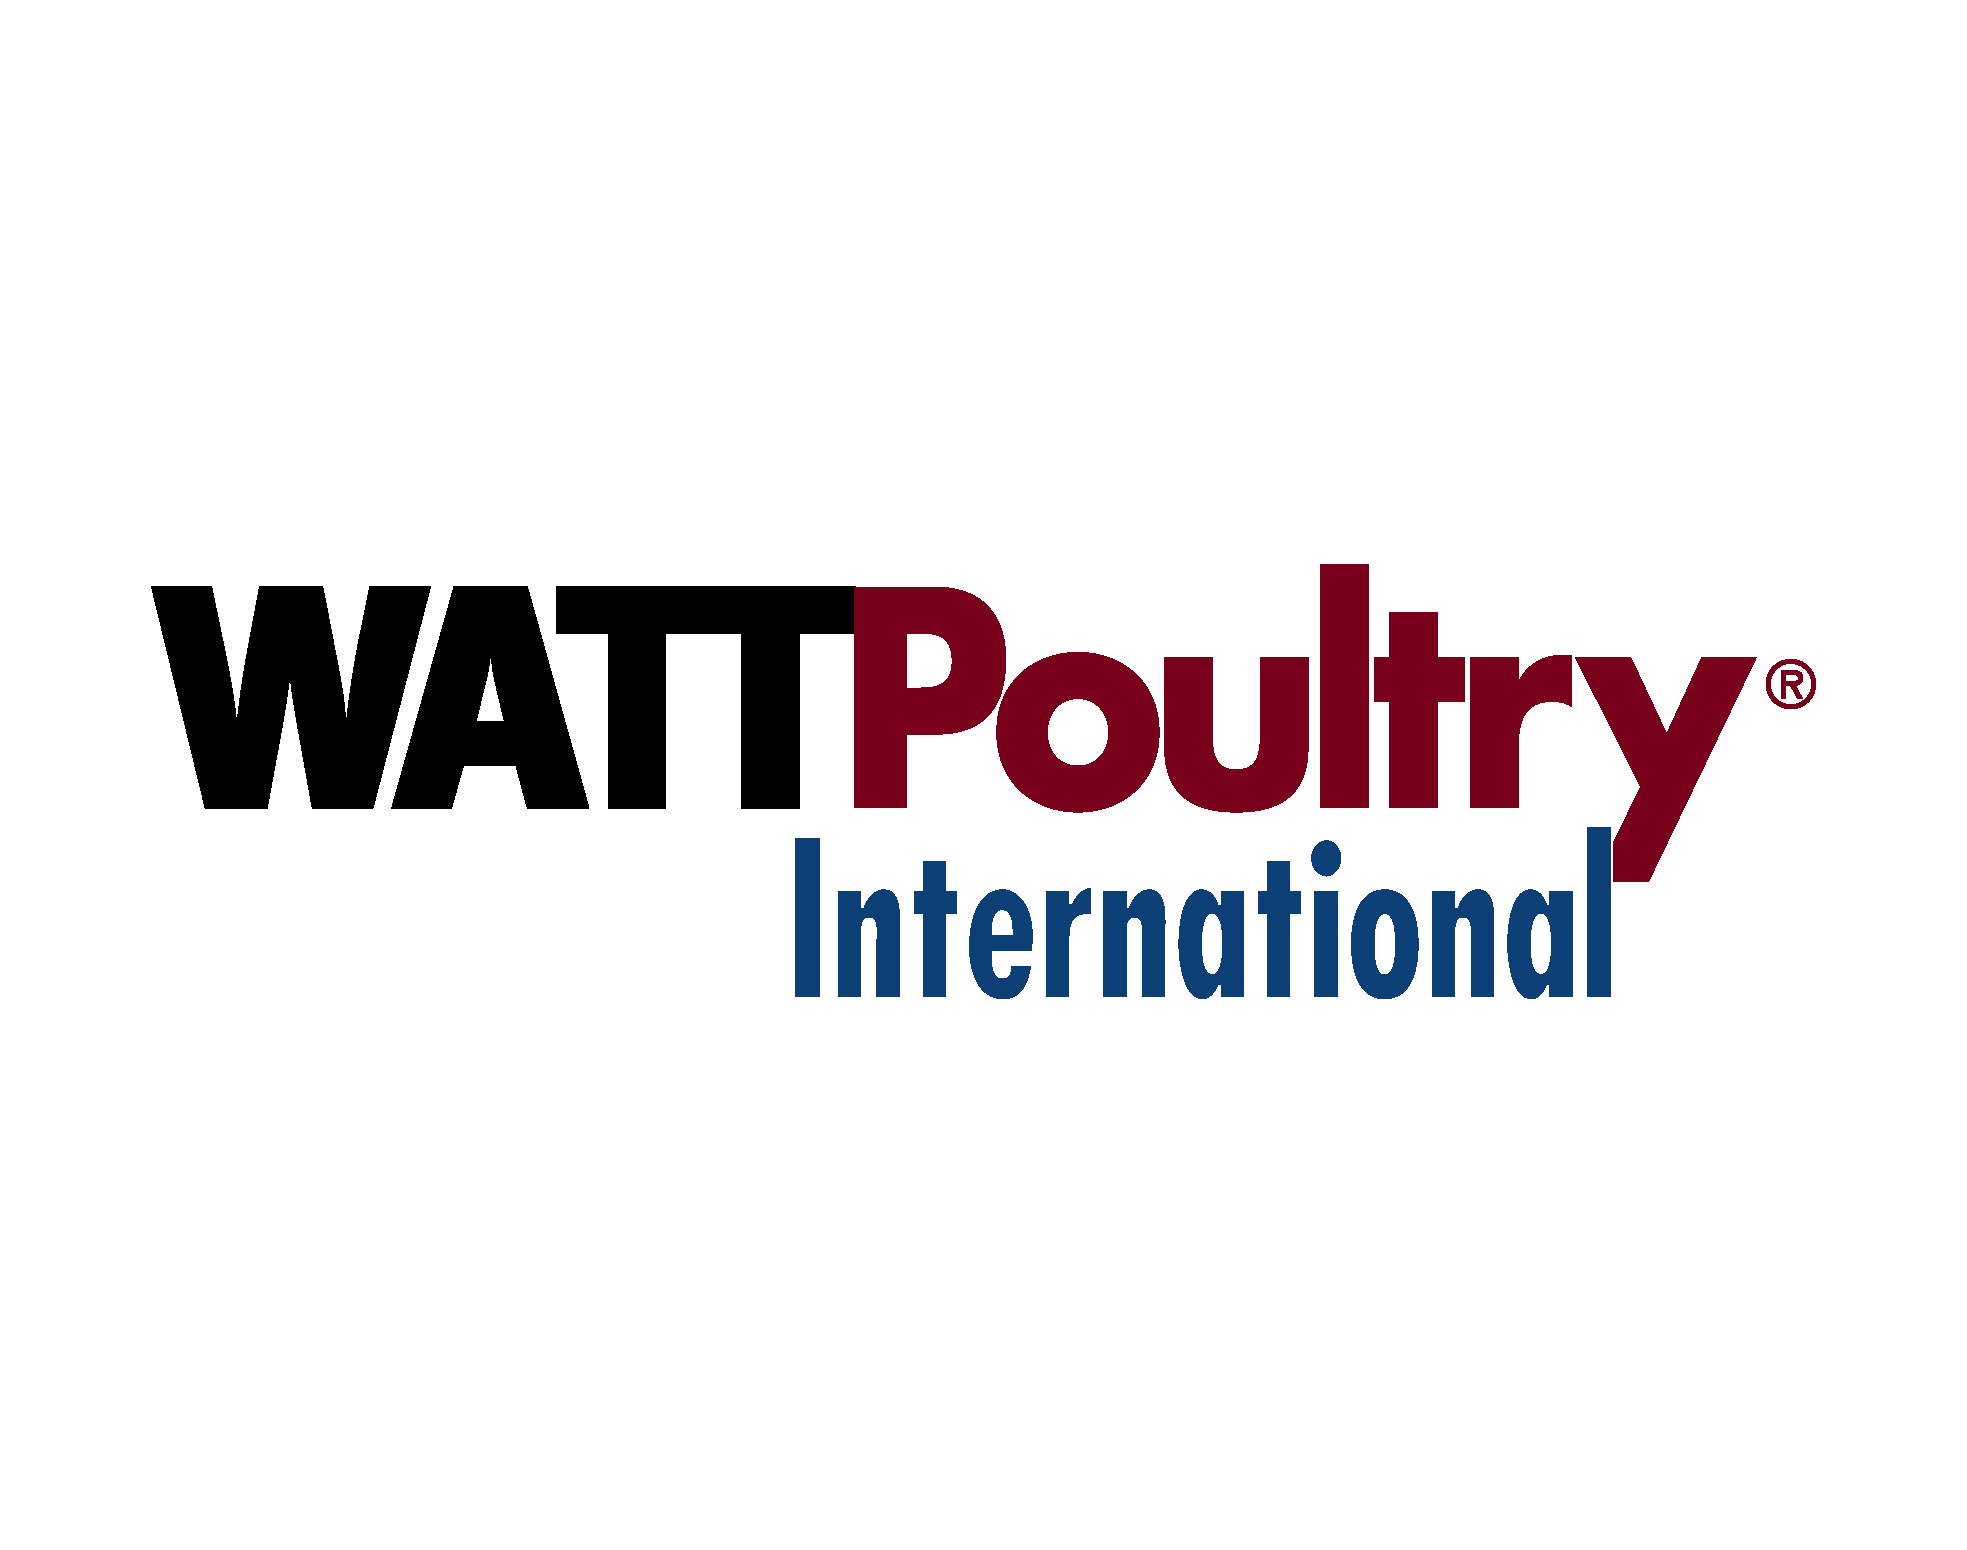 WATT Poultry International